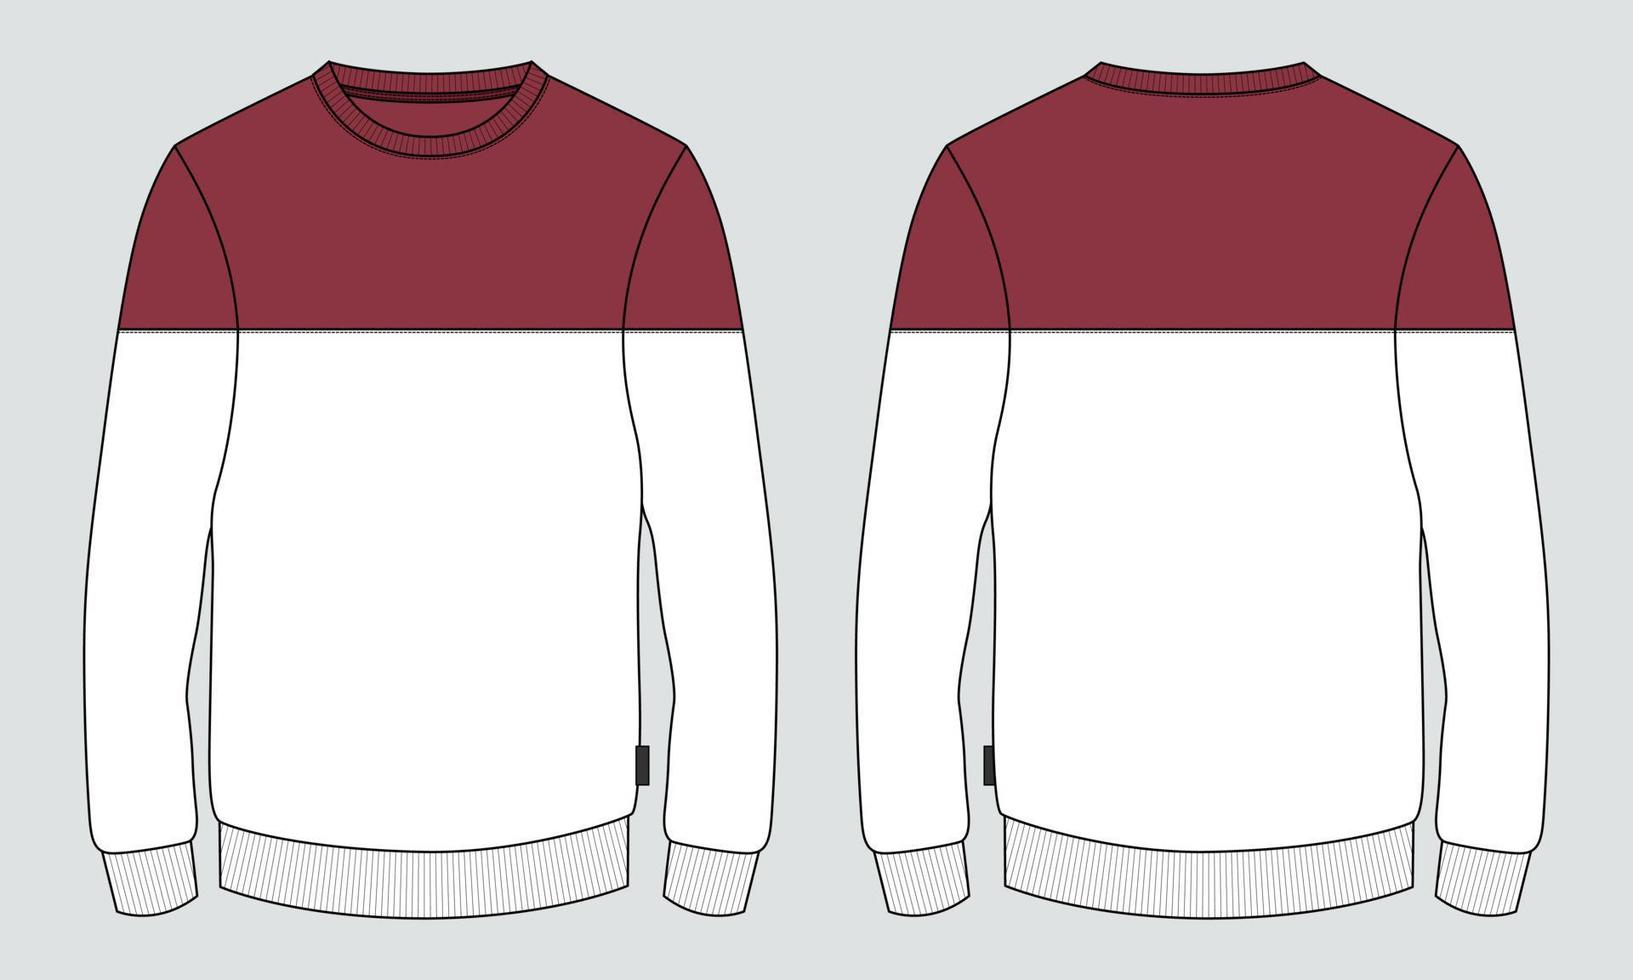 zweifarbiges rot-weißes Langarm-Sweatshirt technische Mode flache Skizzenzeichnung Vektorillustrationsvorlage für Herren. Bekleidungsdesign-Mockup vektor